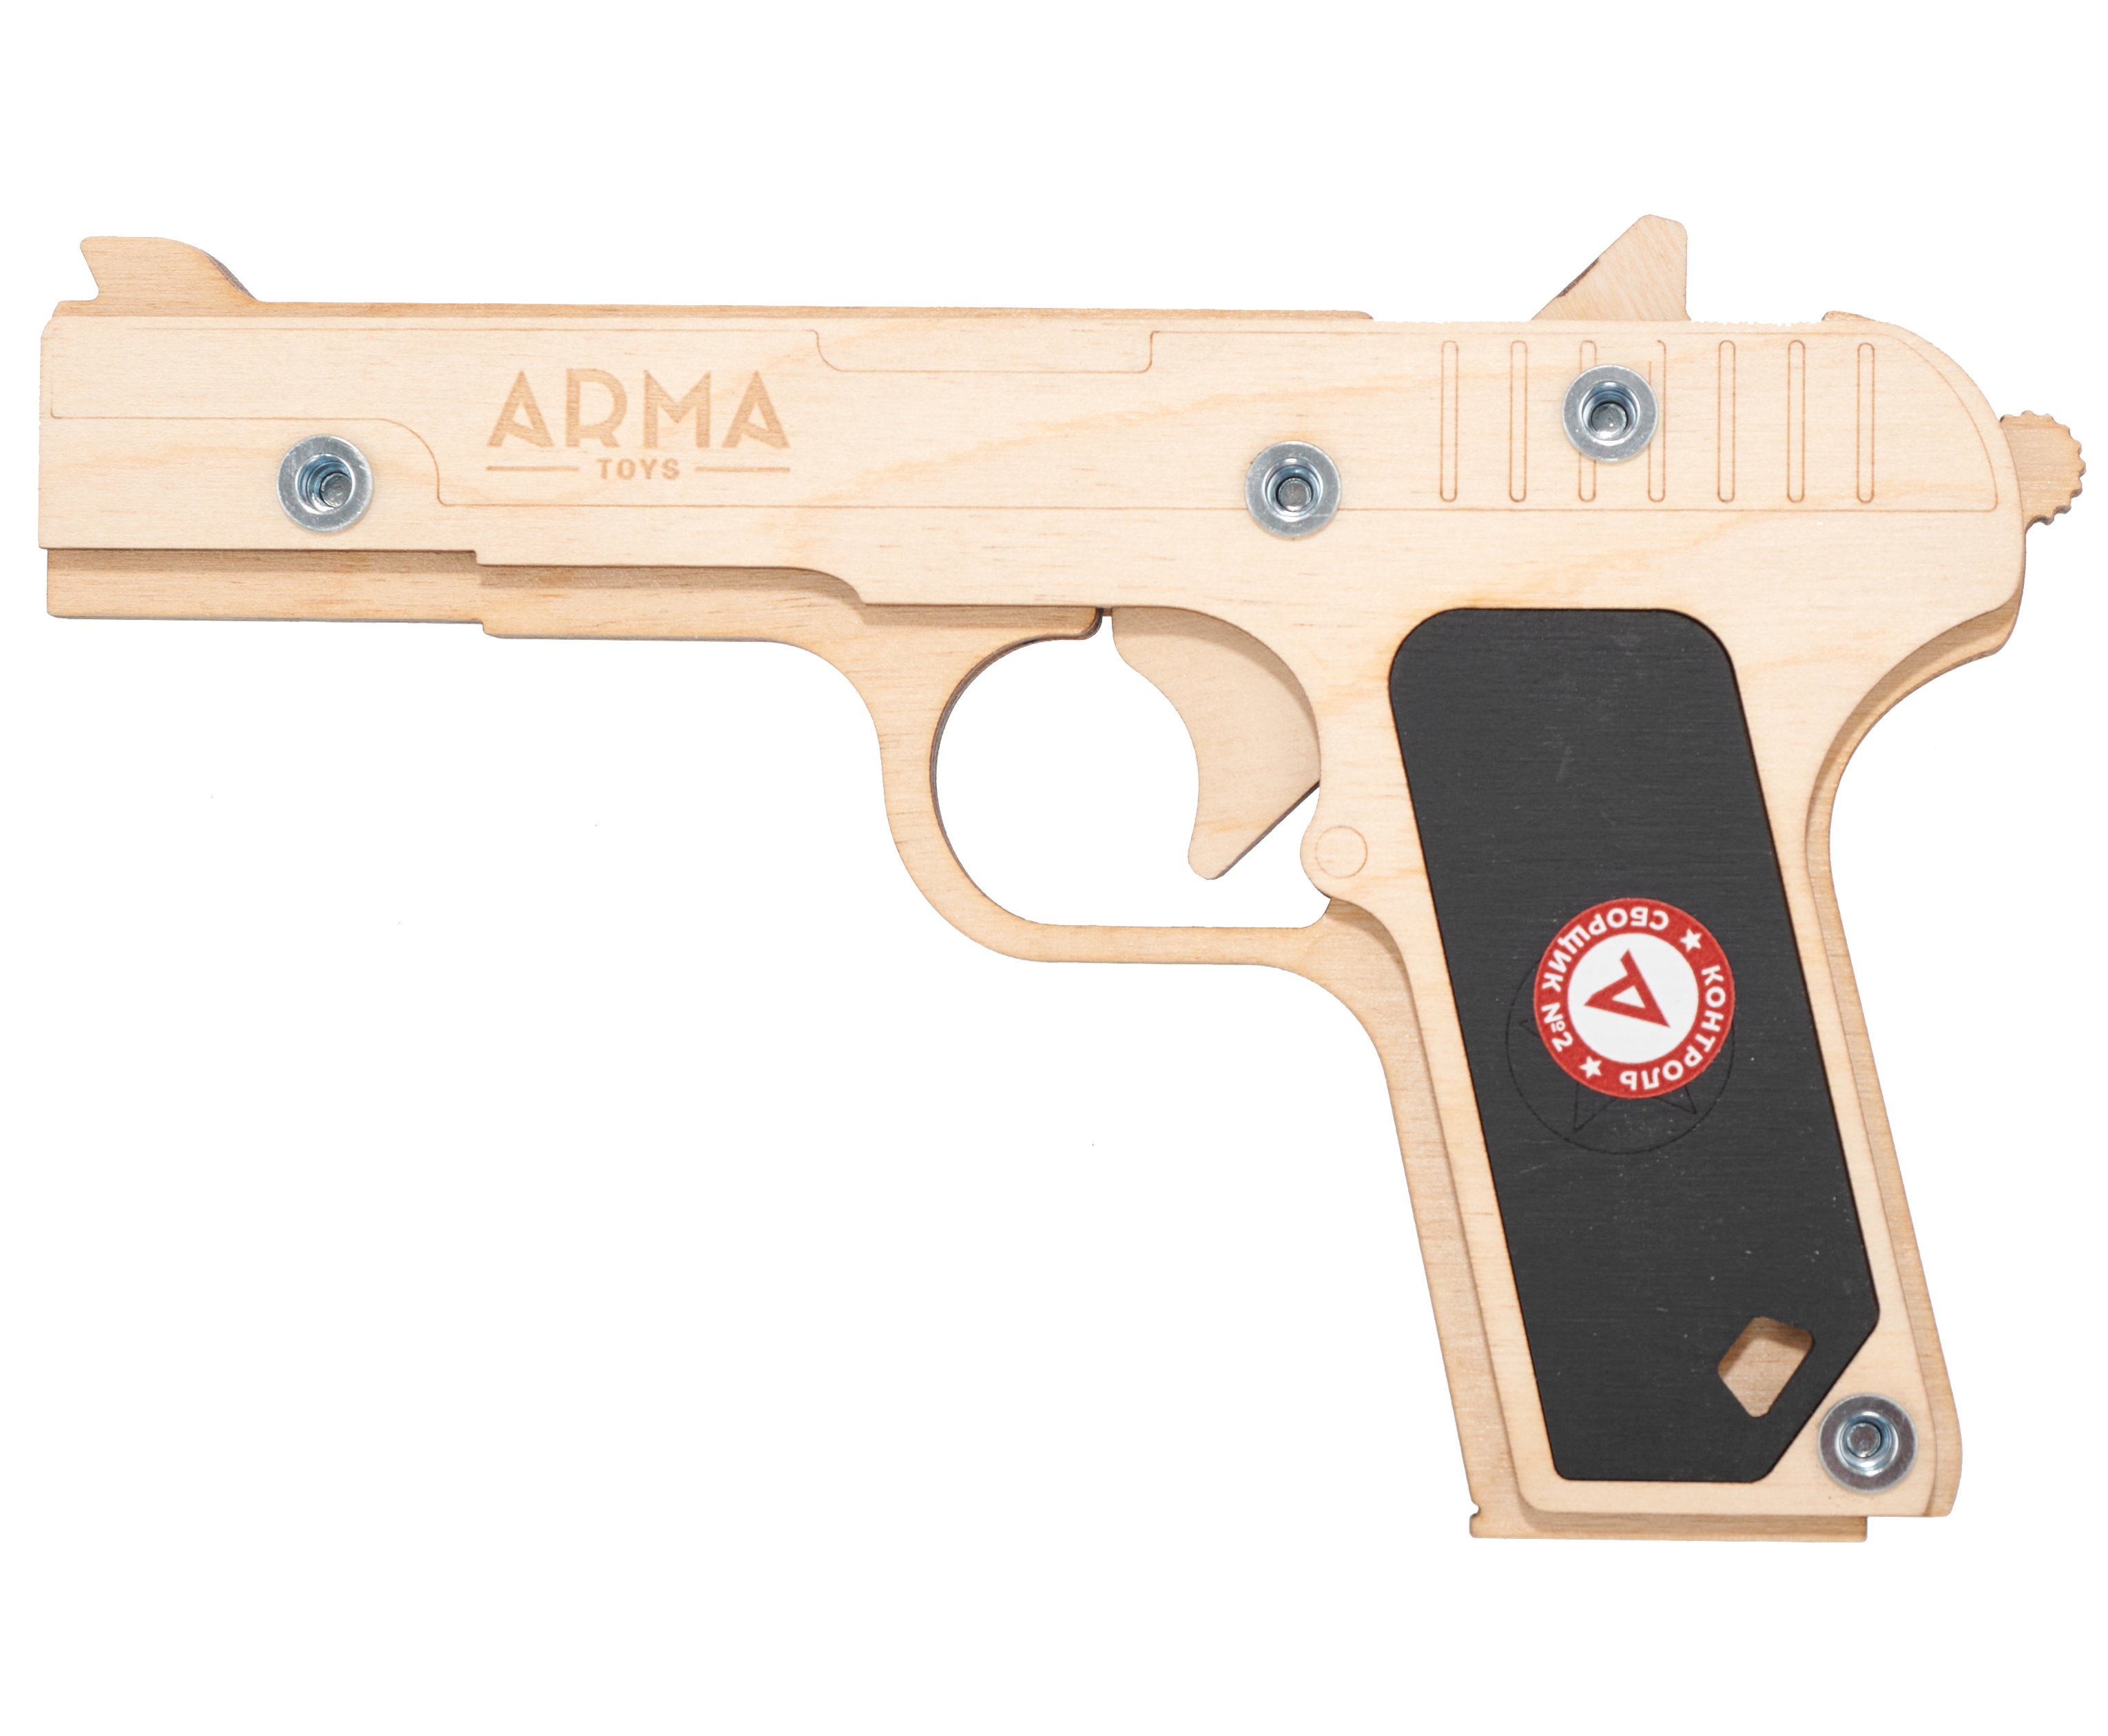 Резинкострел игрушечный Arma toys пистолет ТТ Компакт макет, Токарев, ATL002